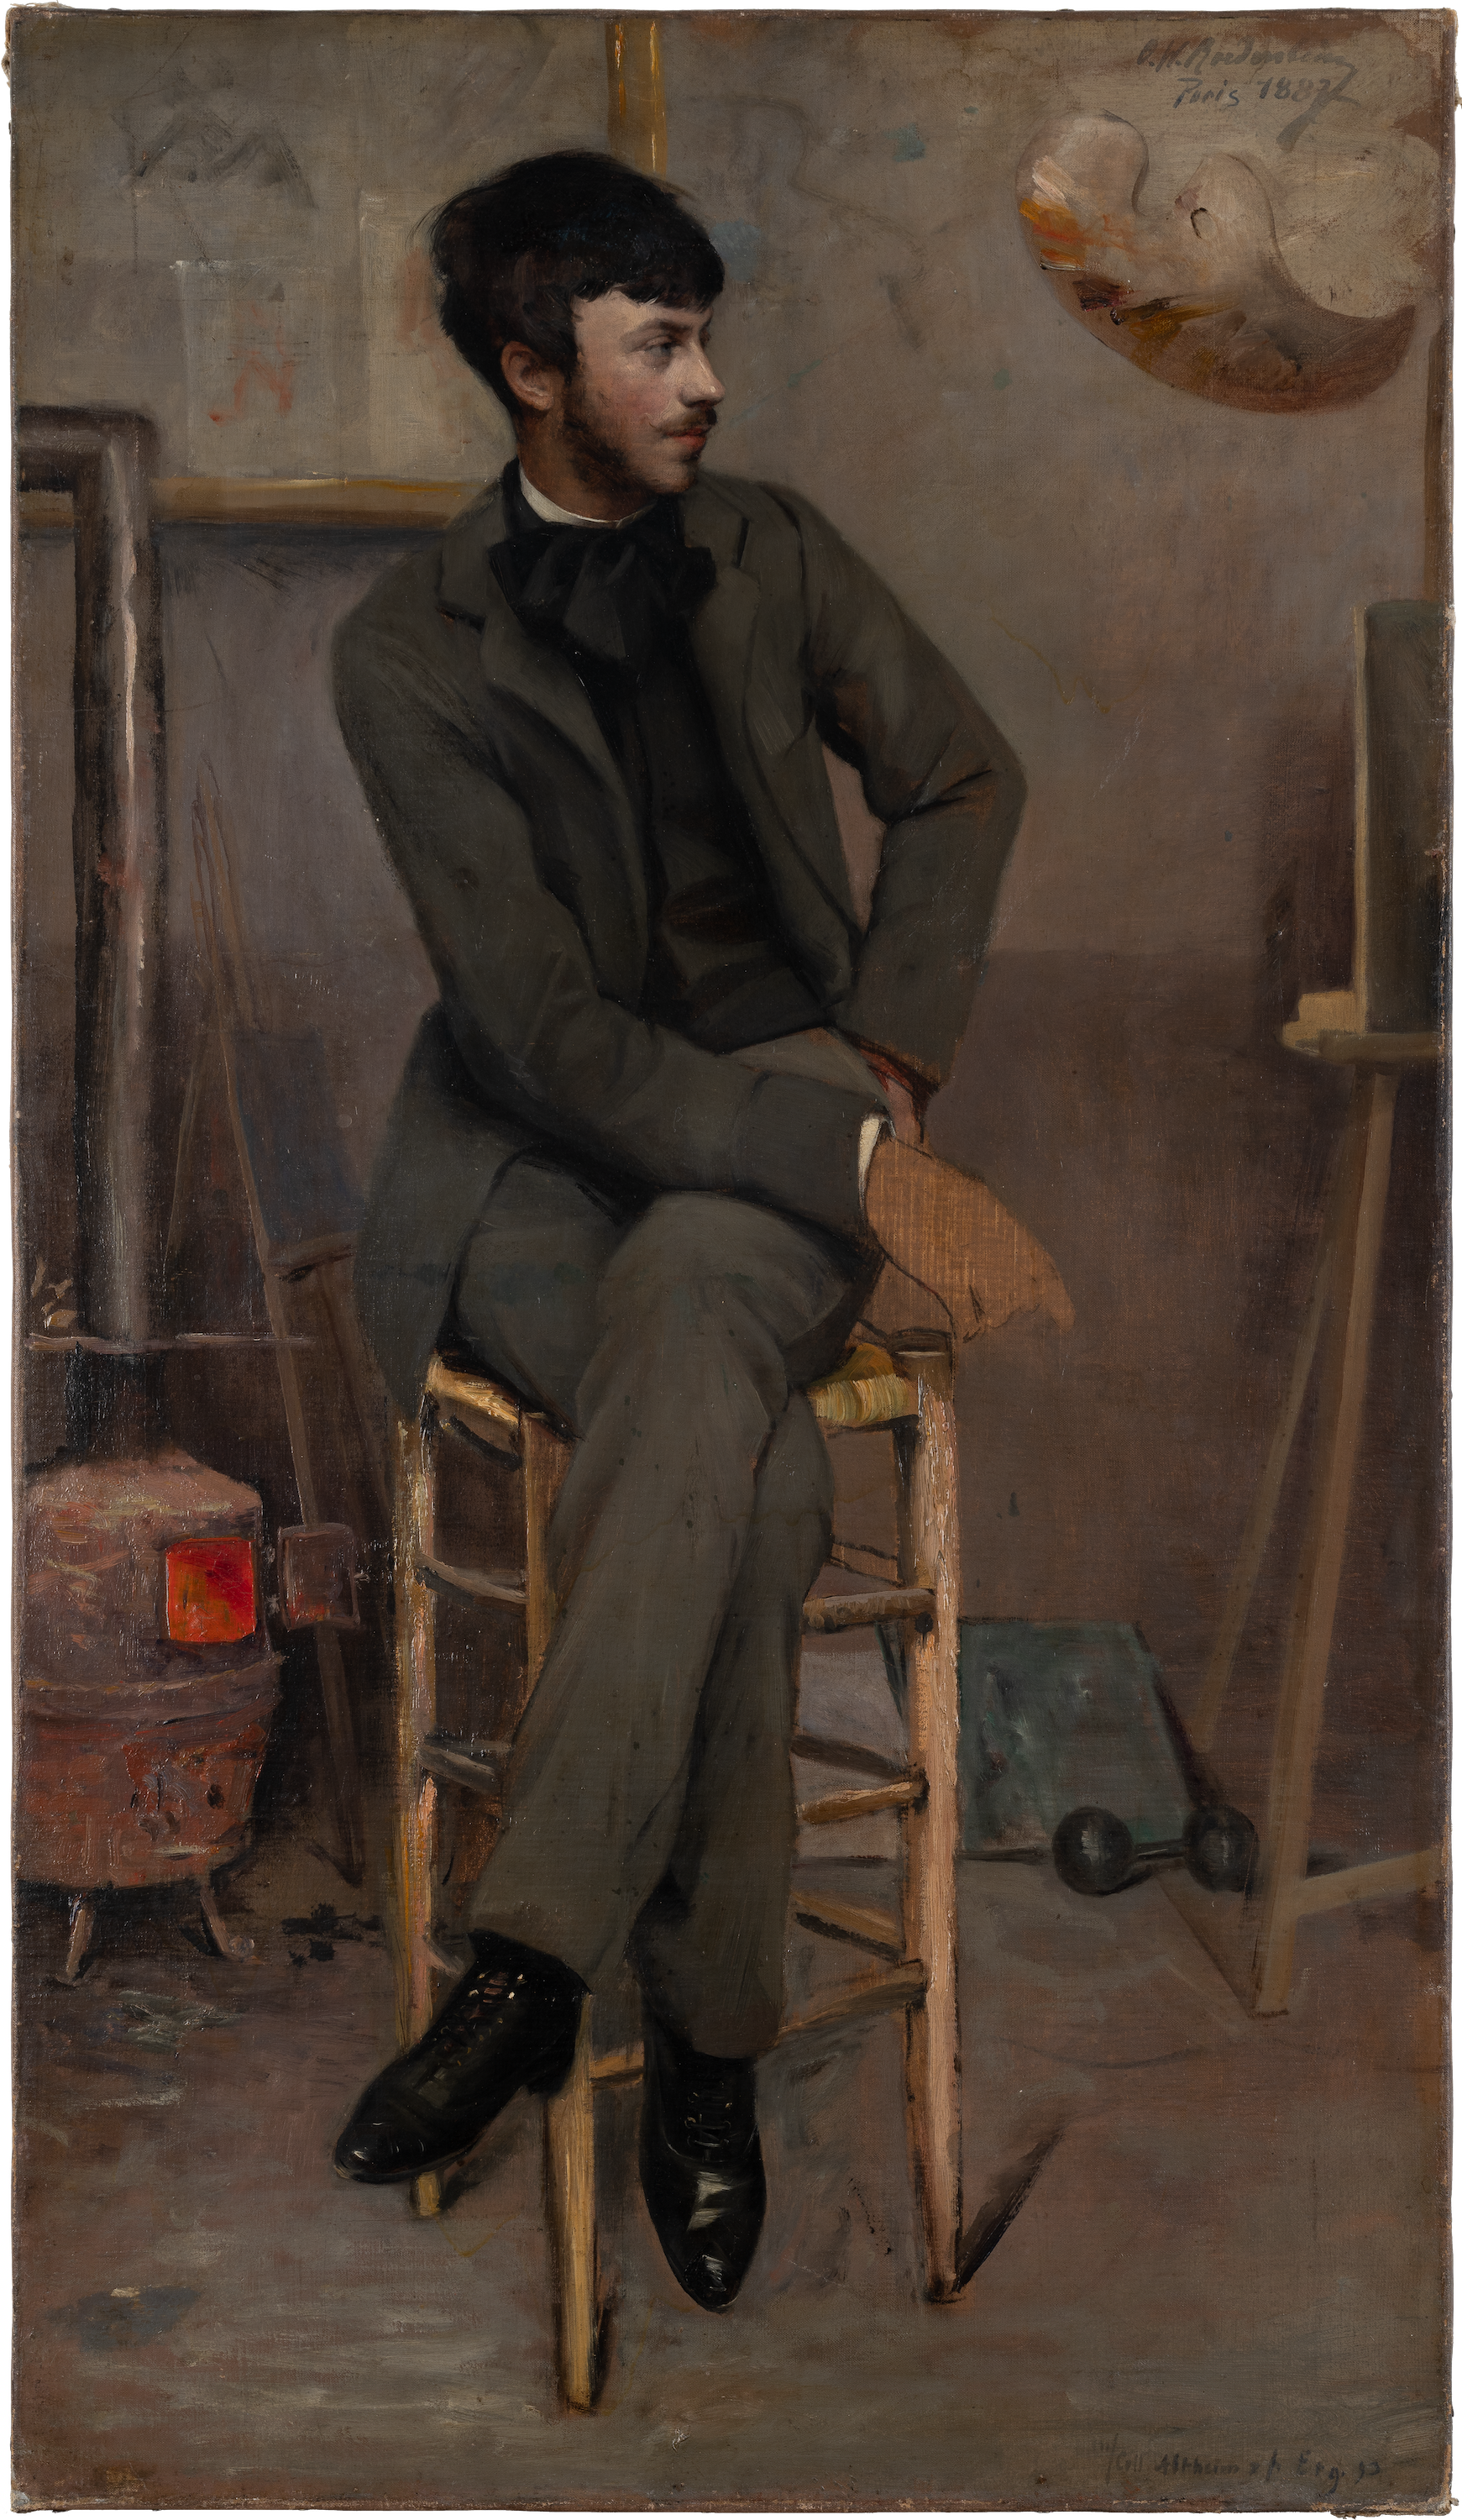 在巴黎画室里的一位画家肖像 by 奥蒂莉 W.罗埃德斯坦 - 1887年 - 86.1 x 49.5 